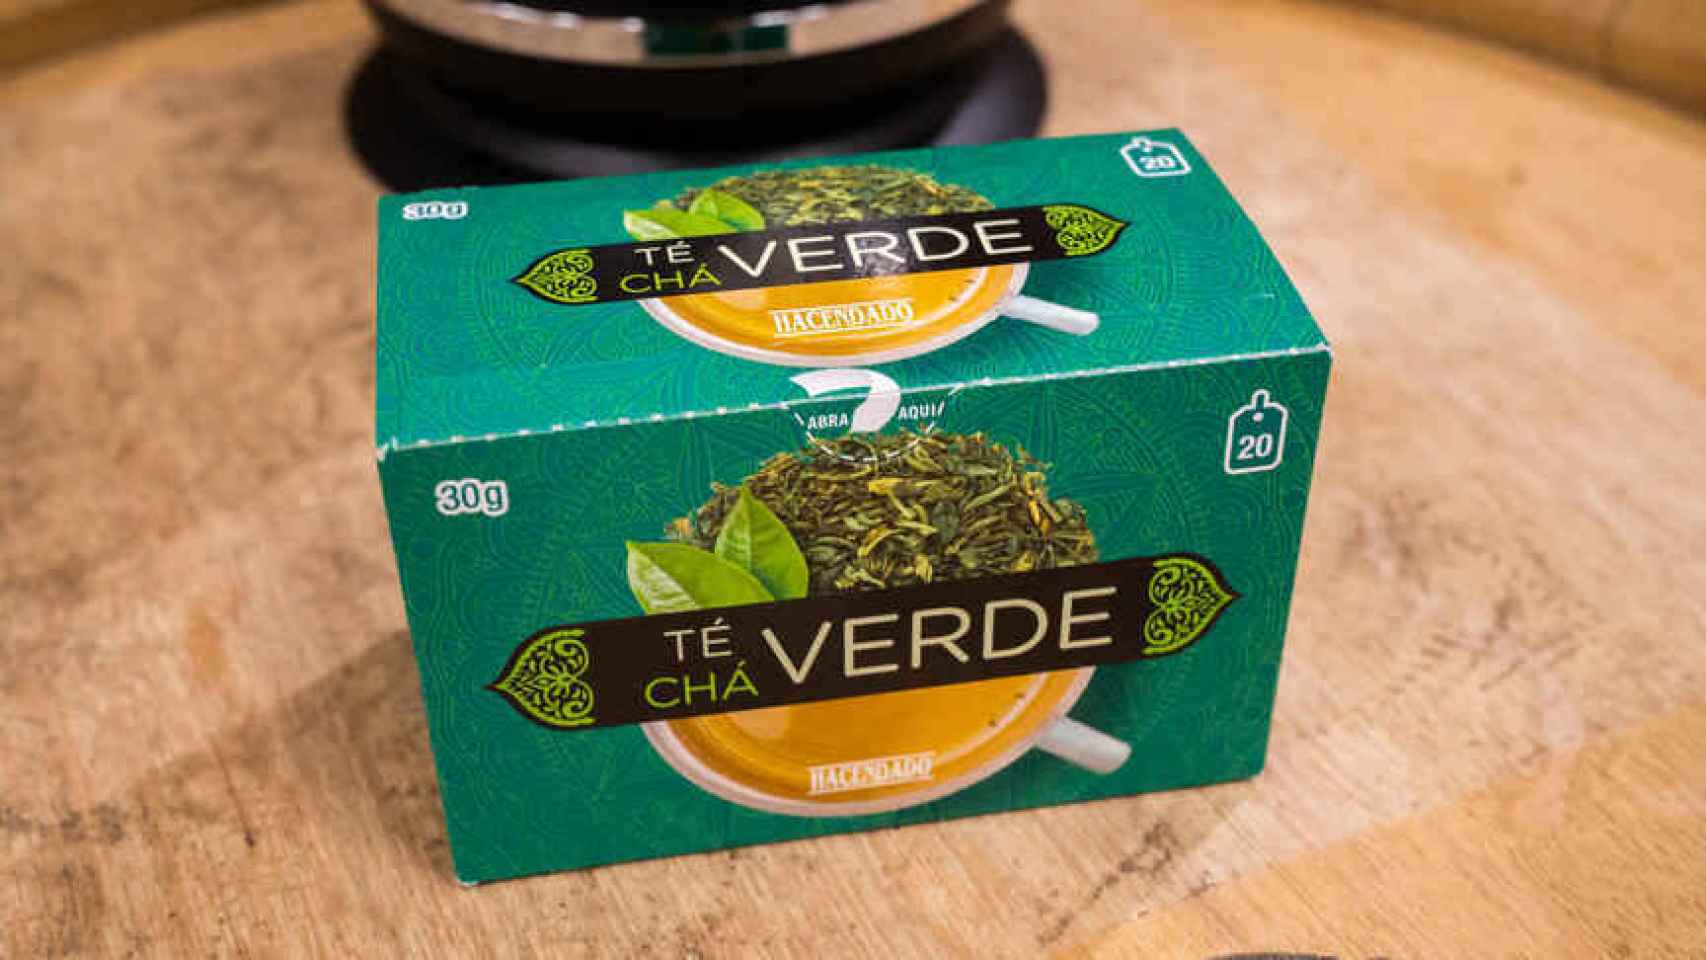 La caja de té verde de Hacendado, la marca blanca de Mercadona.